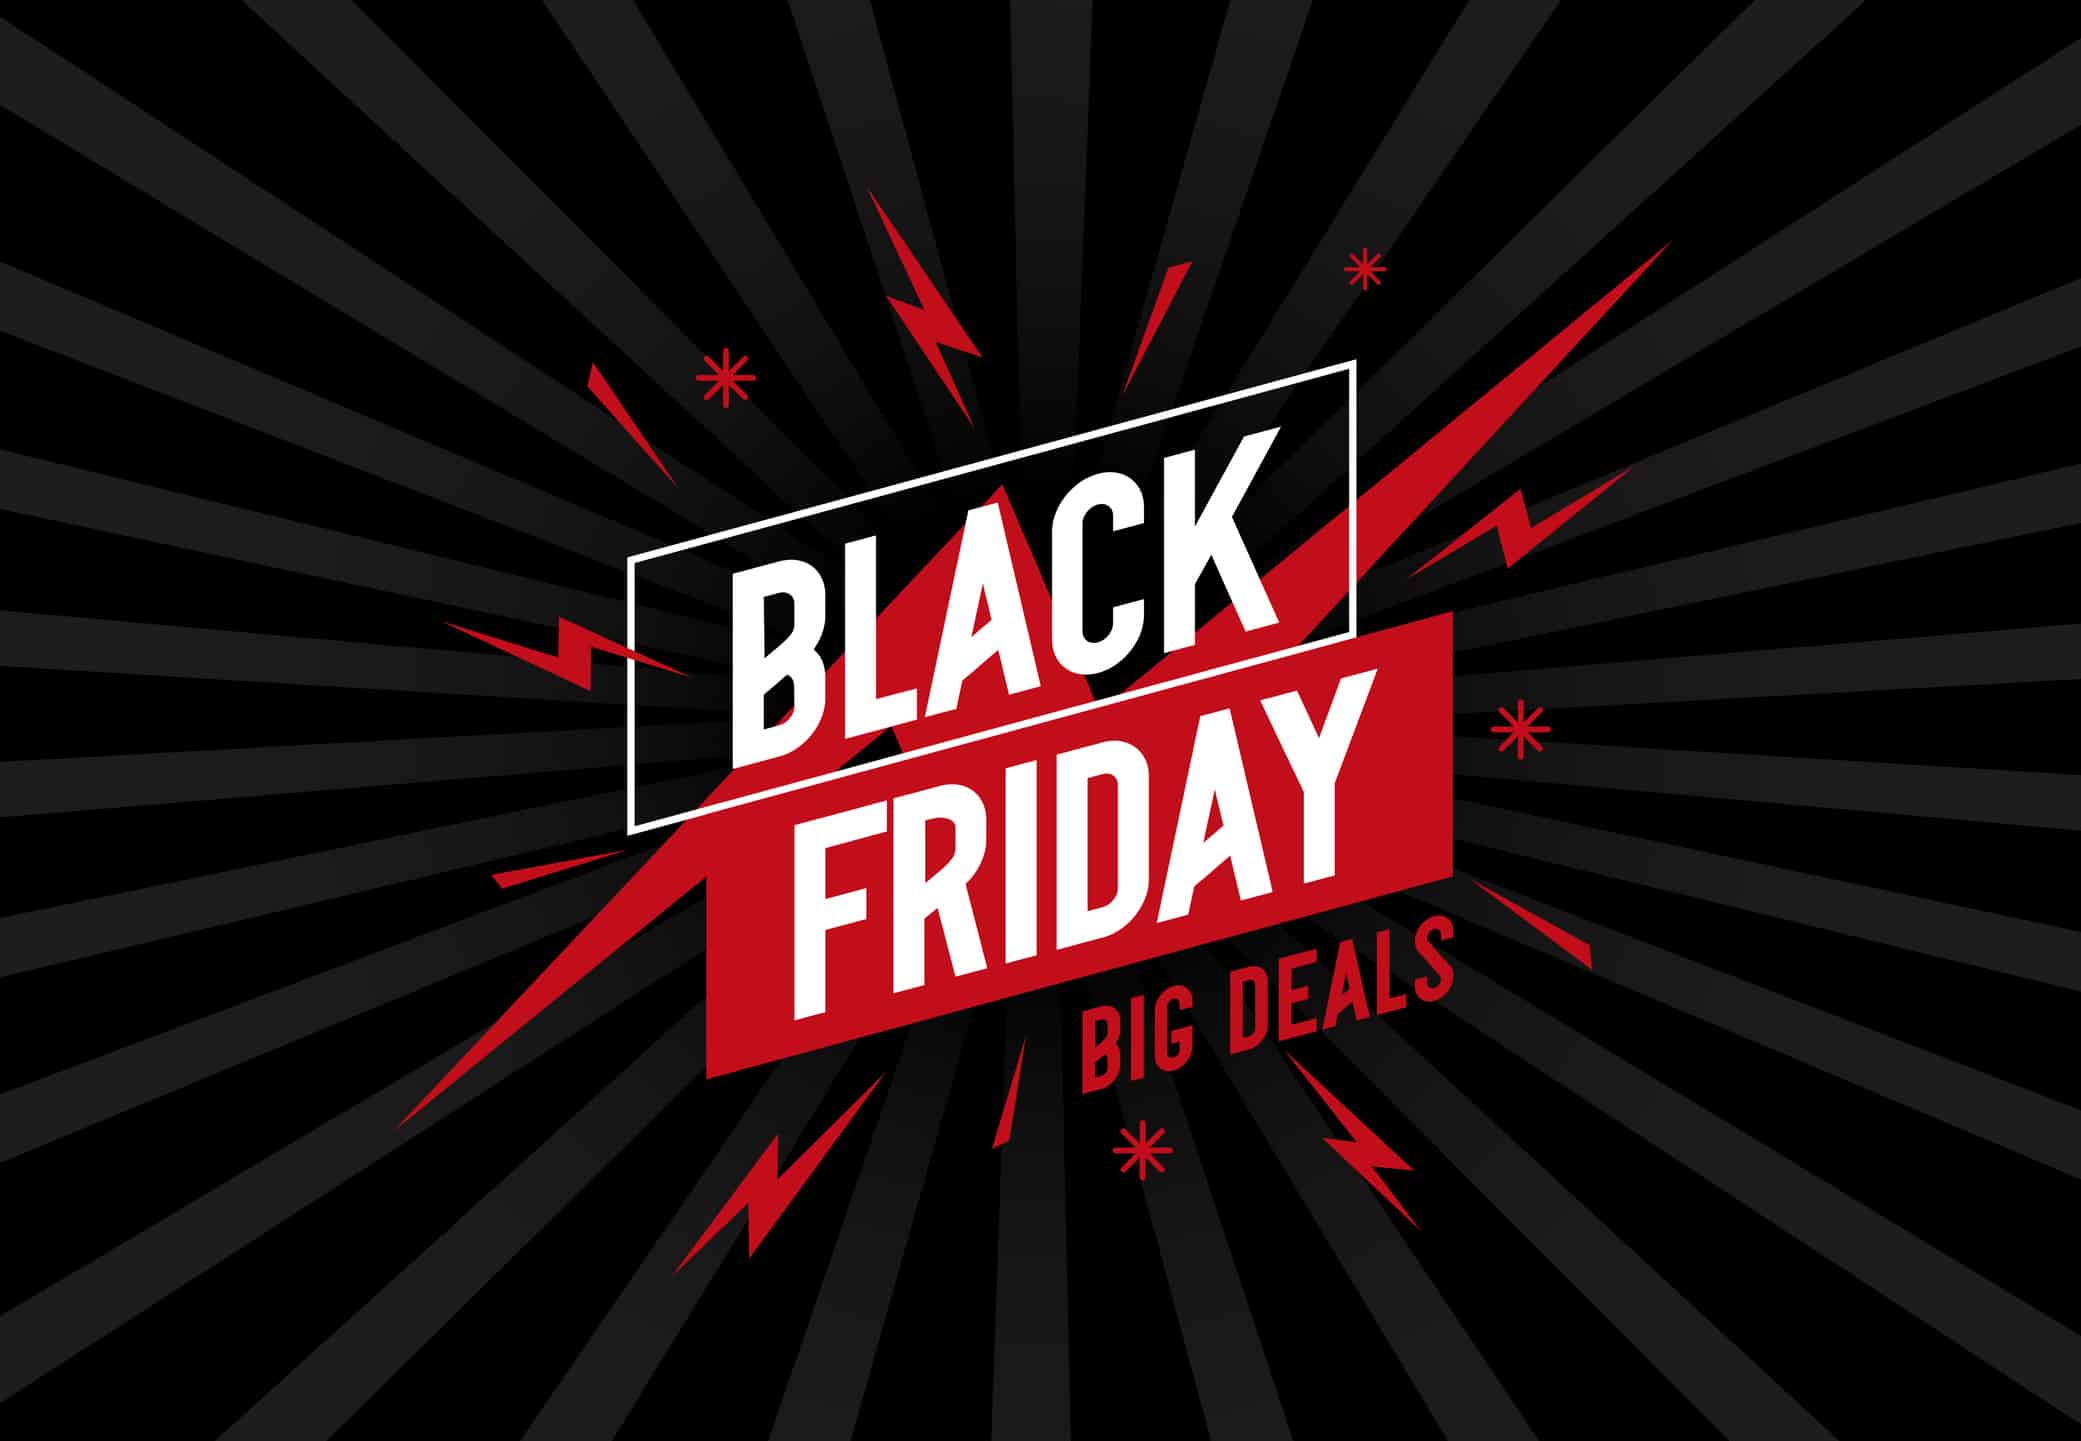 Impulsa tus ventas utilizando los enlaces de pago en este Black Friday